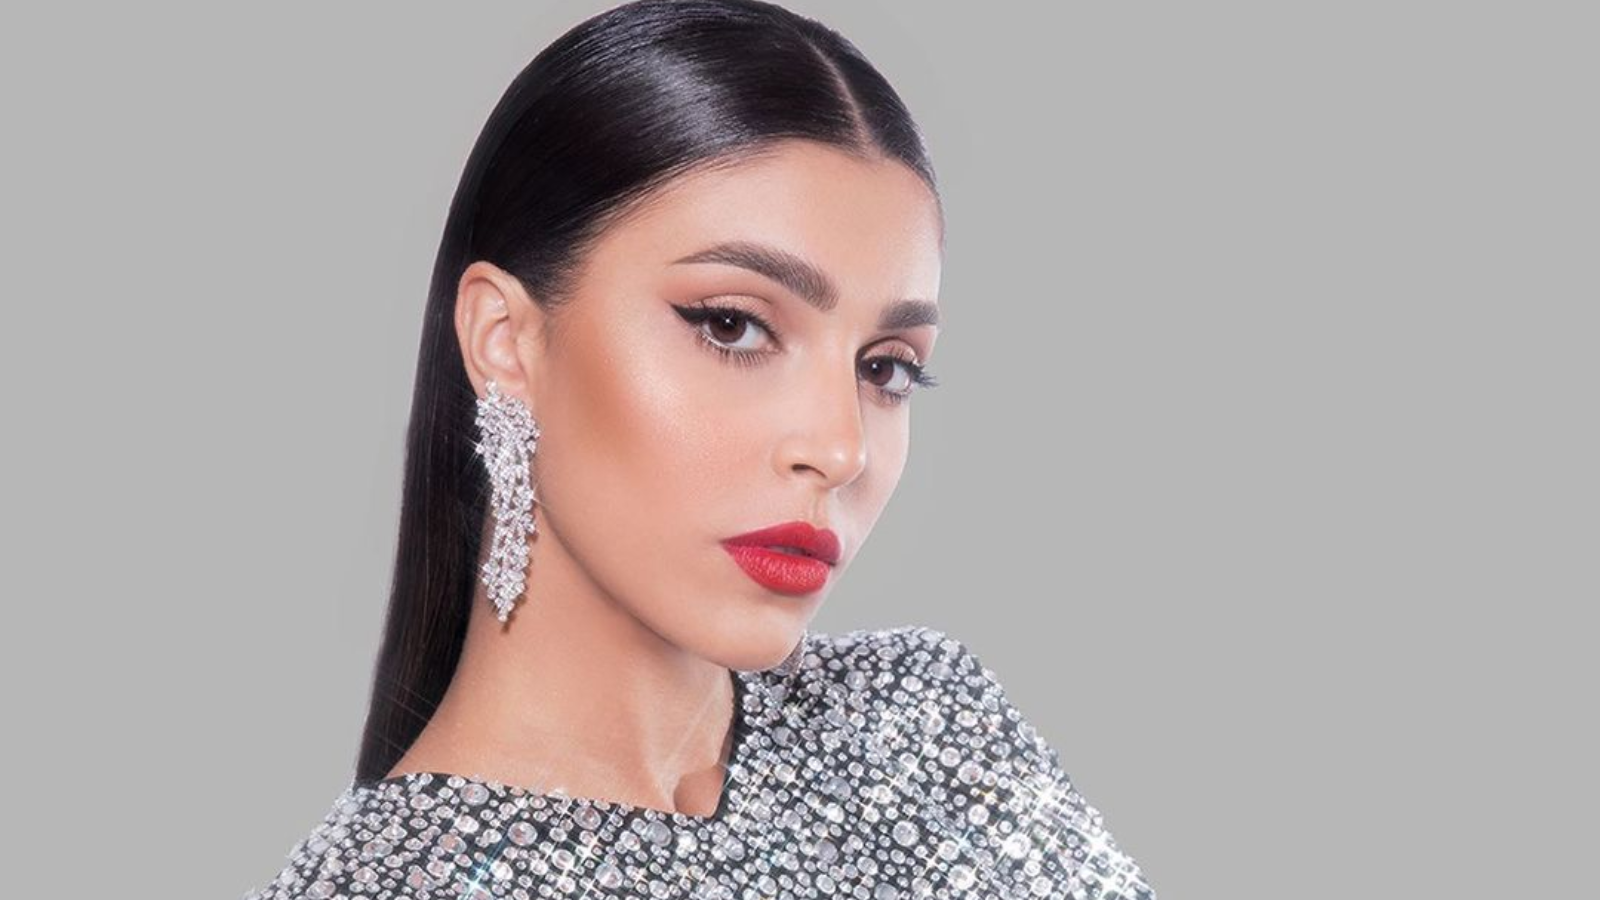 ما علاقة إطلالة "ملكة جمال لبنان" بكيم كارداشيان؟